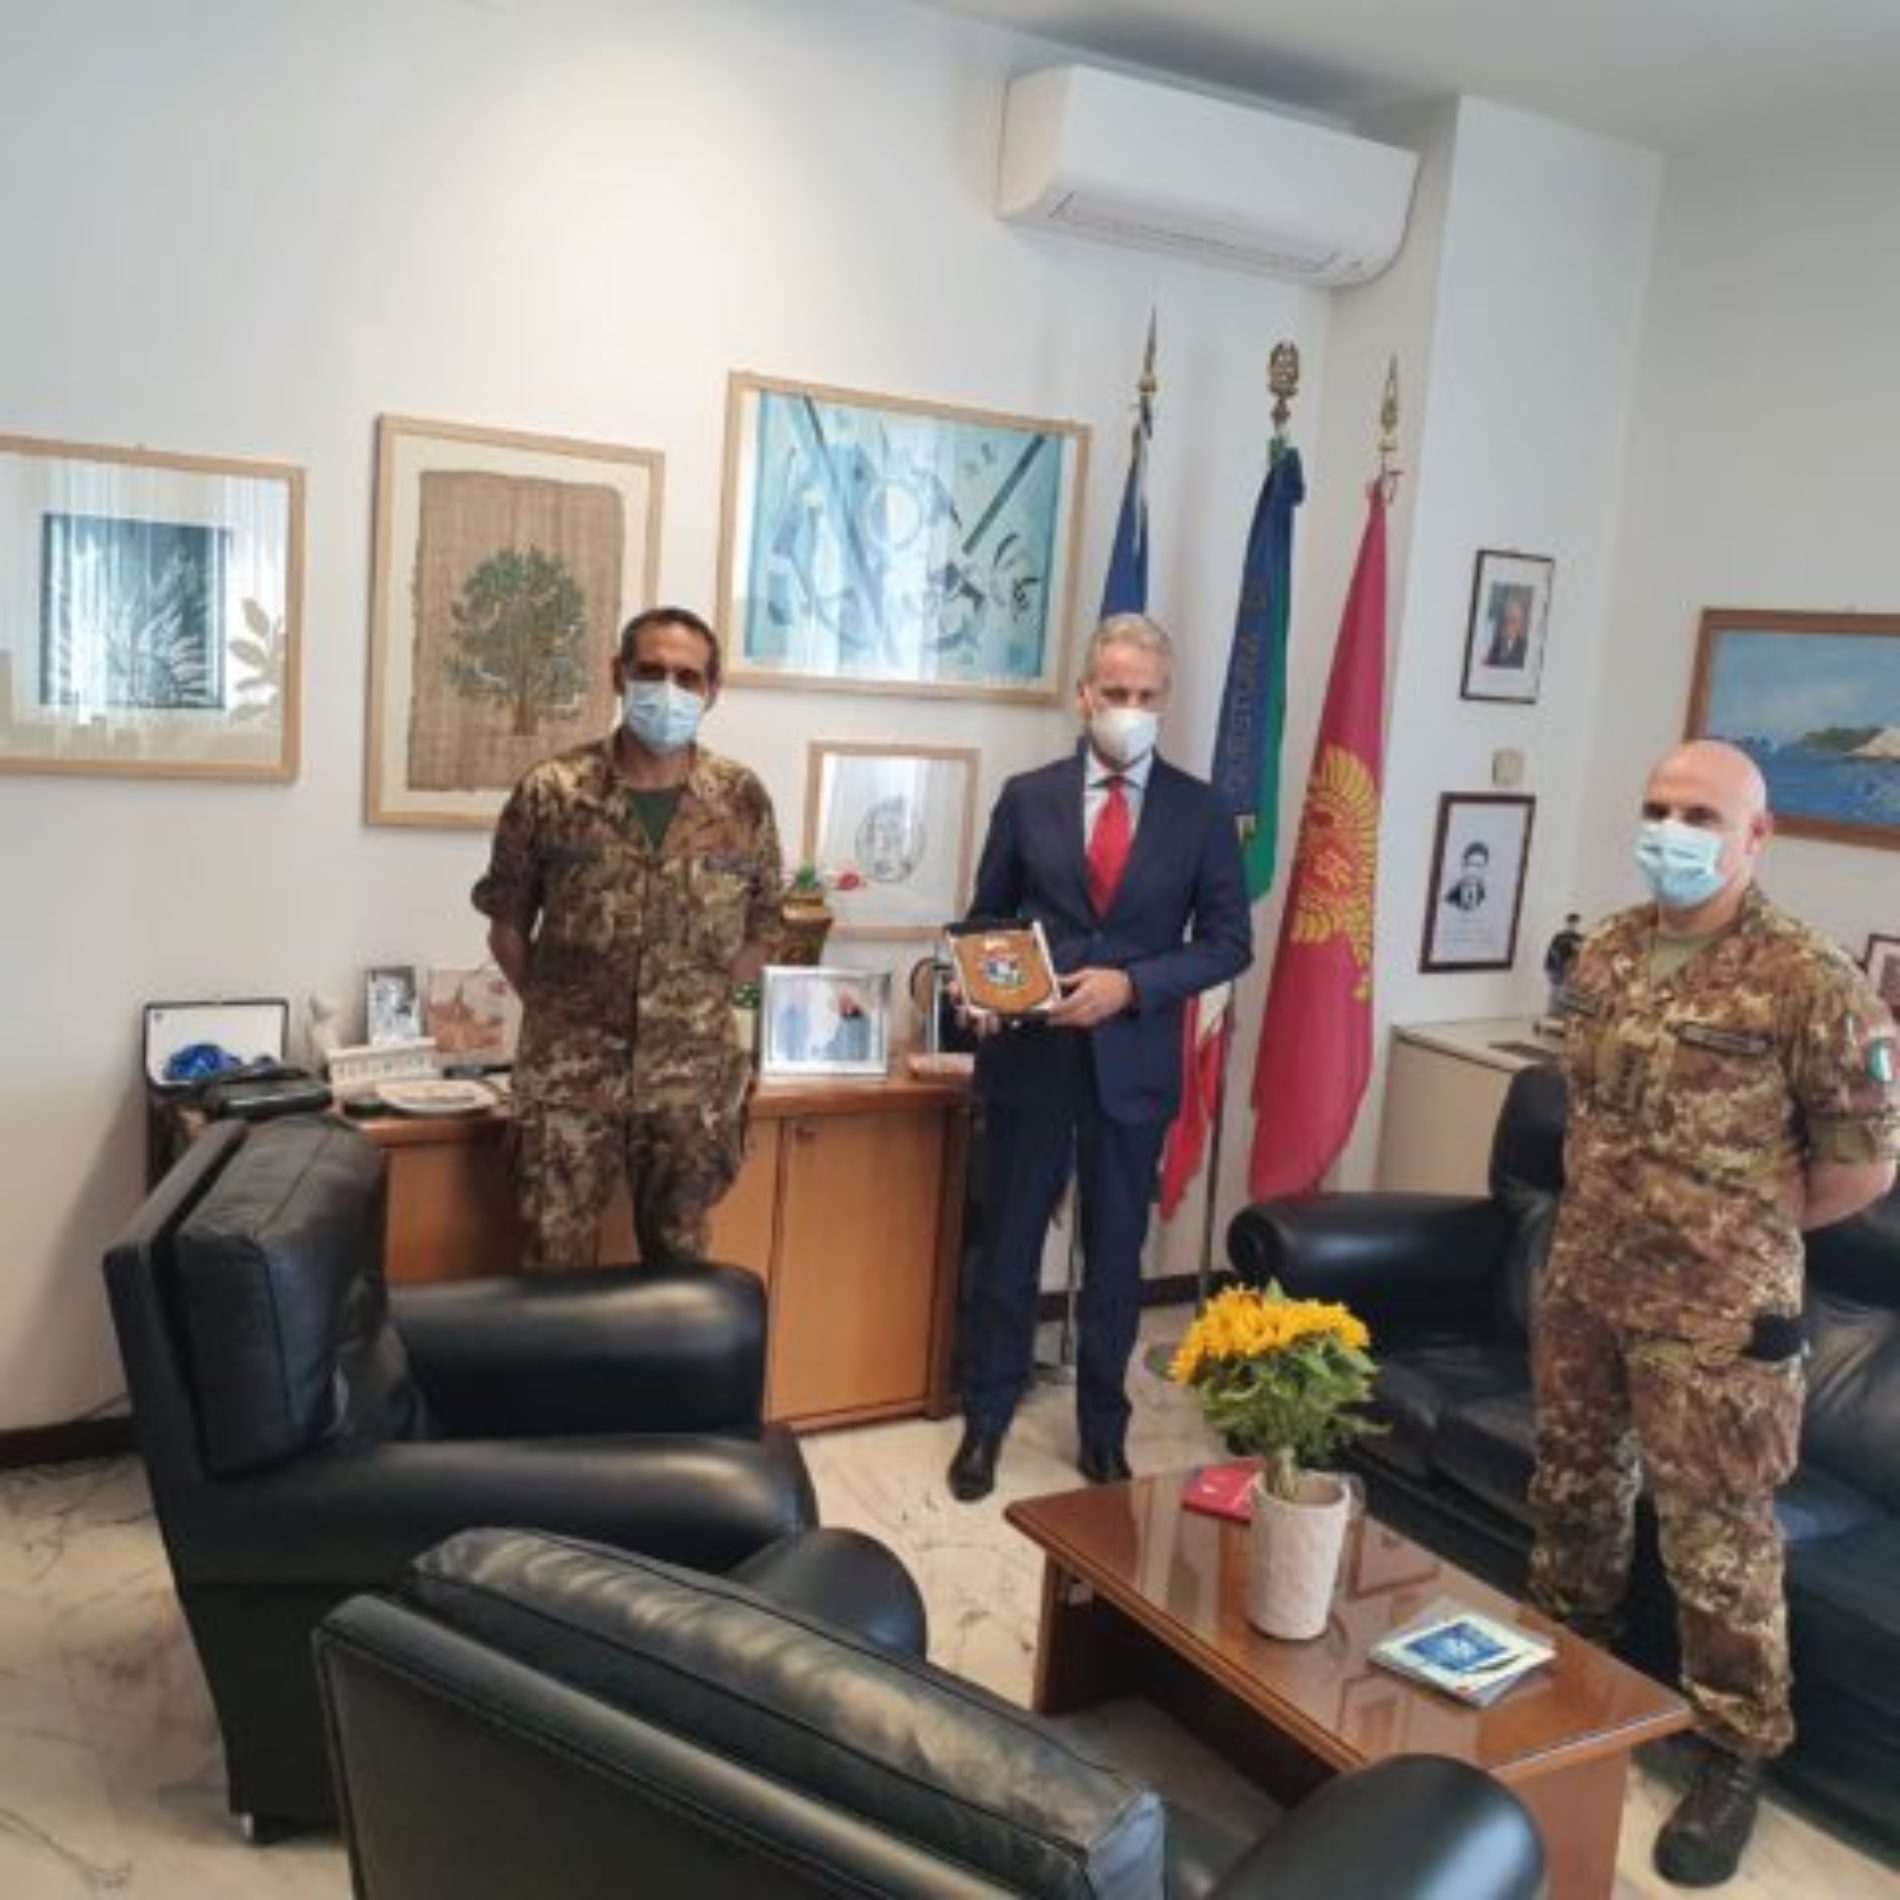 “Strade sicure”, al comando del colonnello Salvatore També il 2° Reggimento Pontieri, lascia la guida del Raggruppamento Lombardia-Trentino Alto Adige